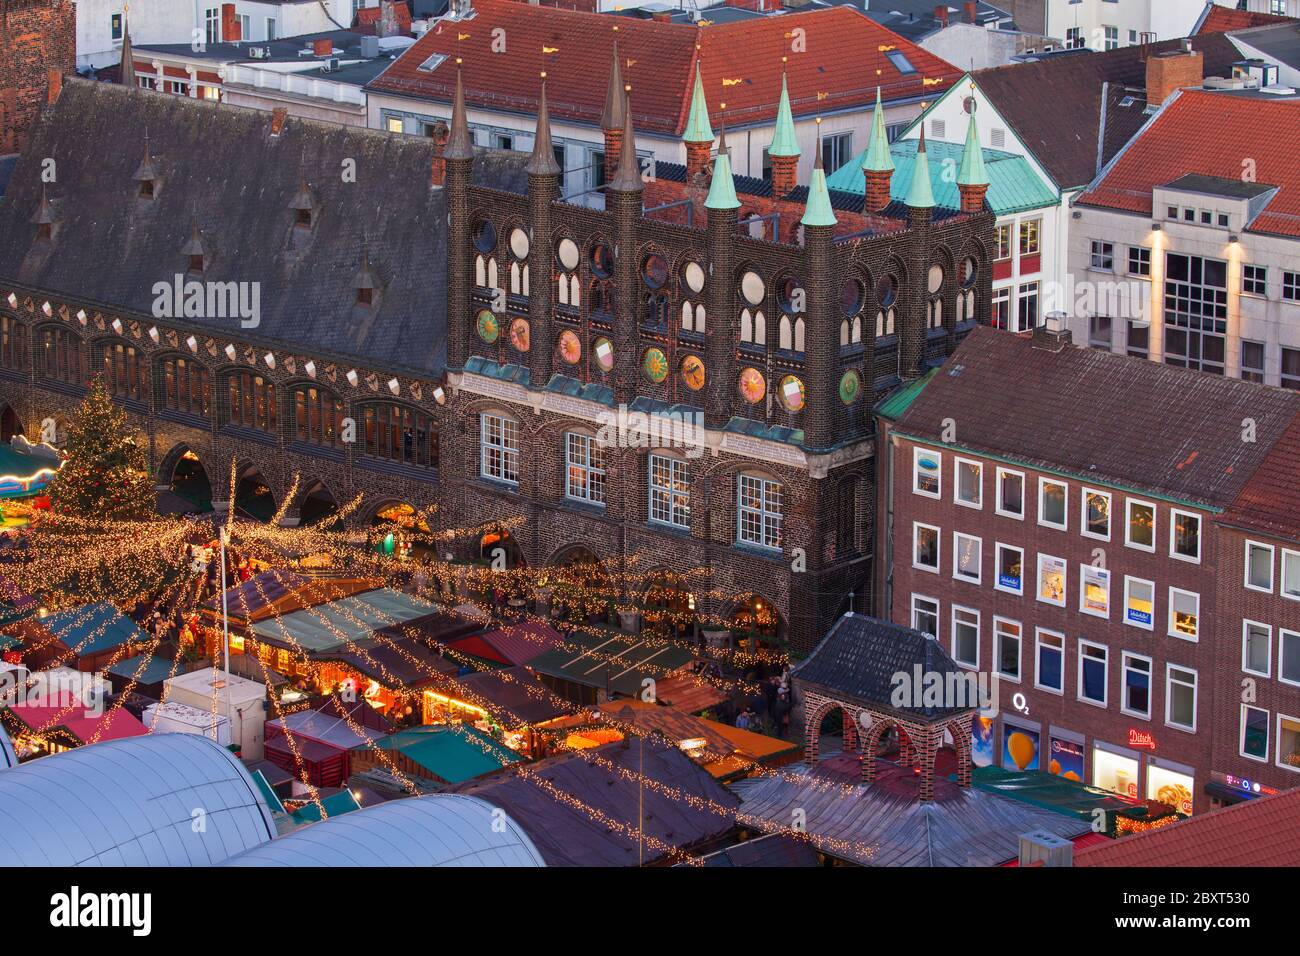 Weihnachtsmarkt auf dem Marktplatz vor dem Rathaus in Lübeck / Lübeck, Schleswig-Holstein, Deutschland Stockfoto